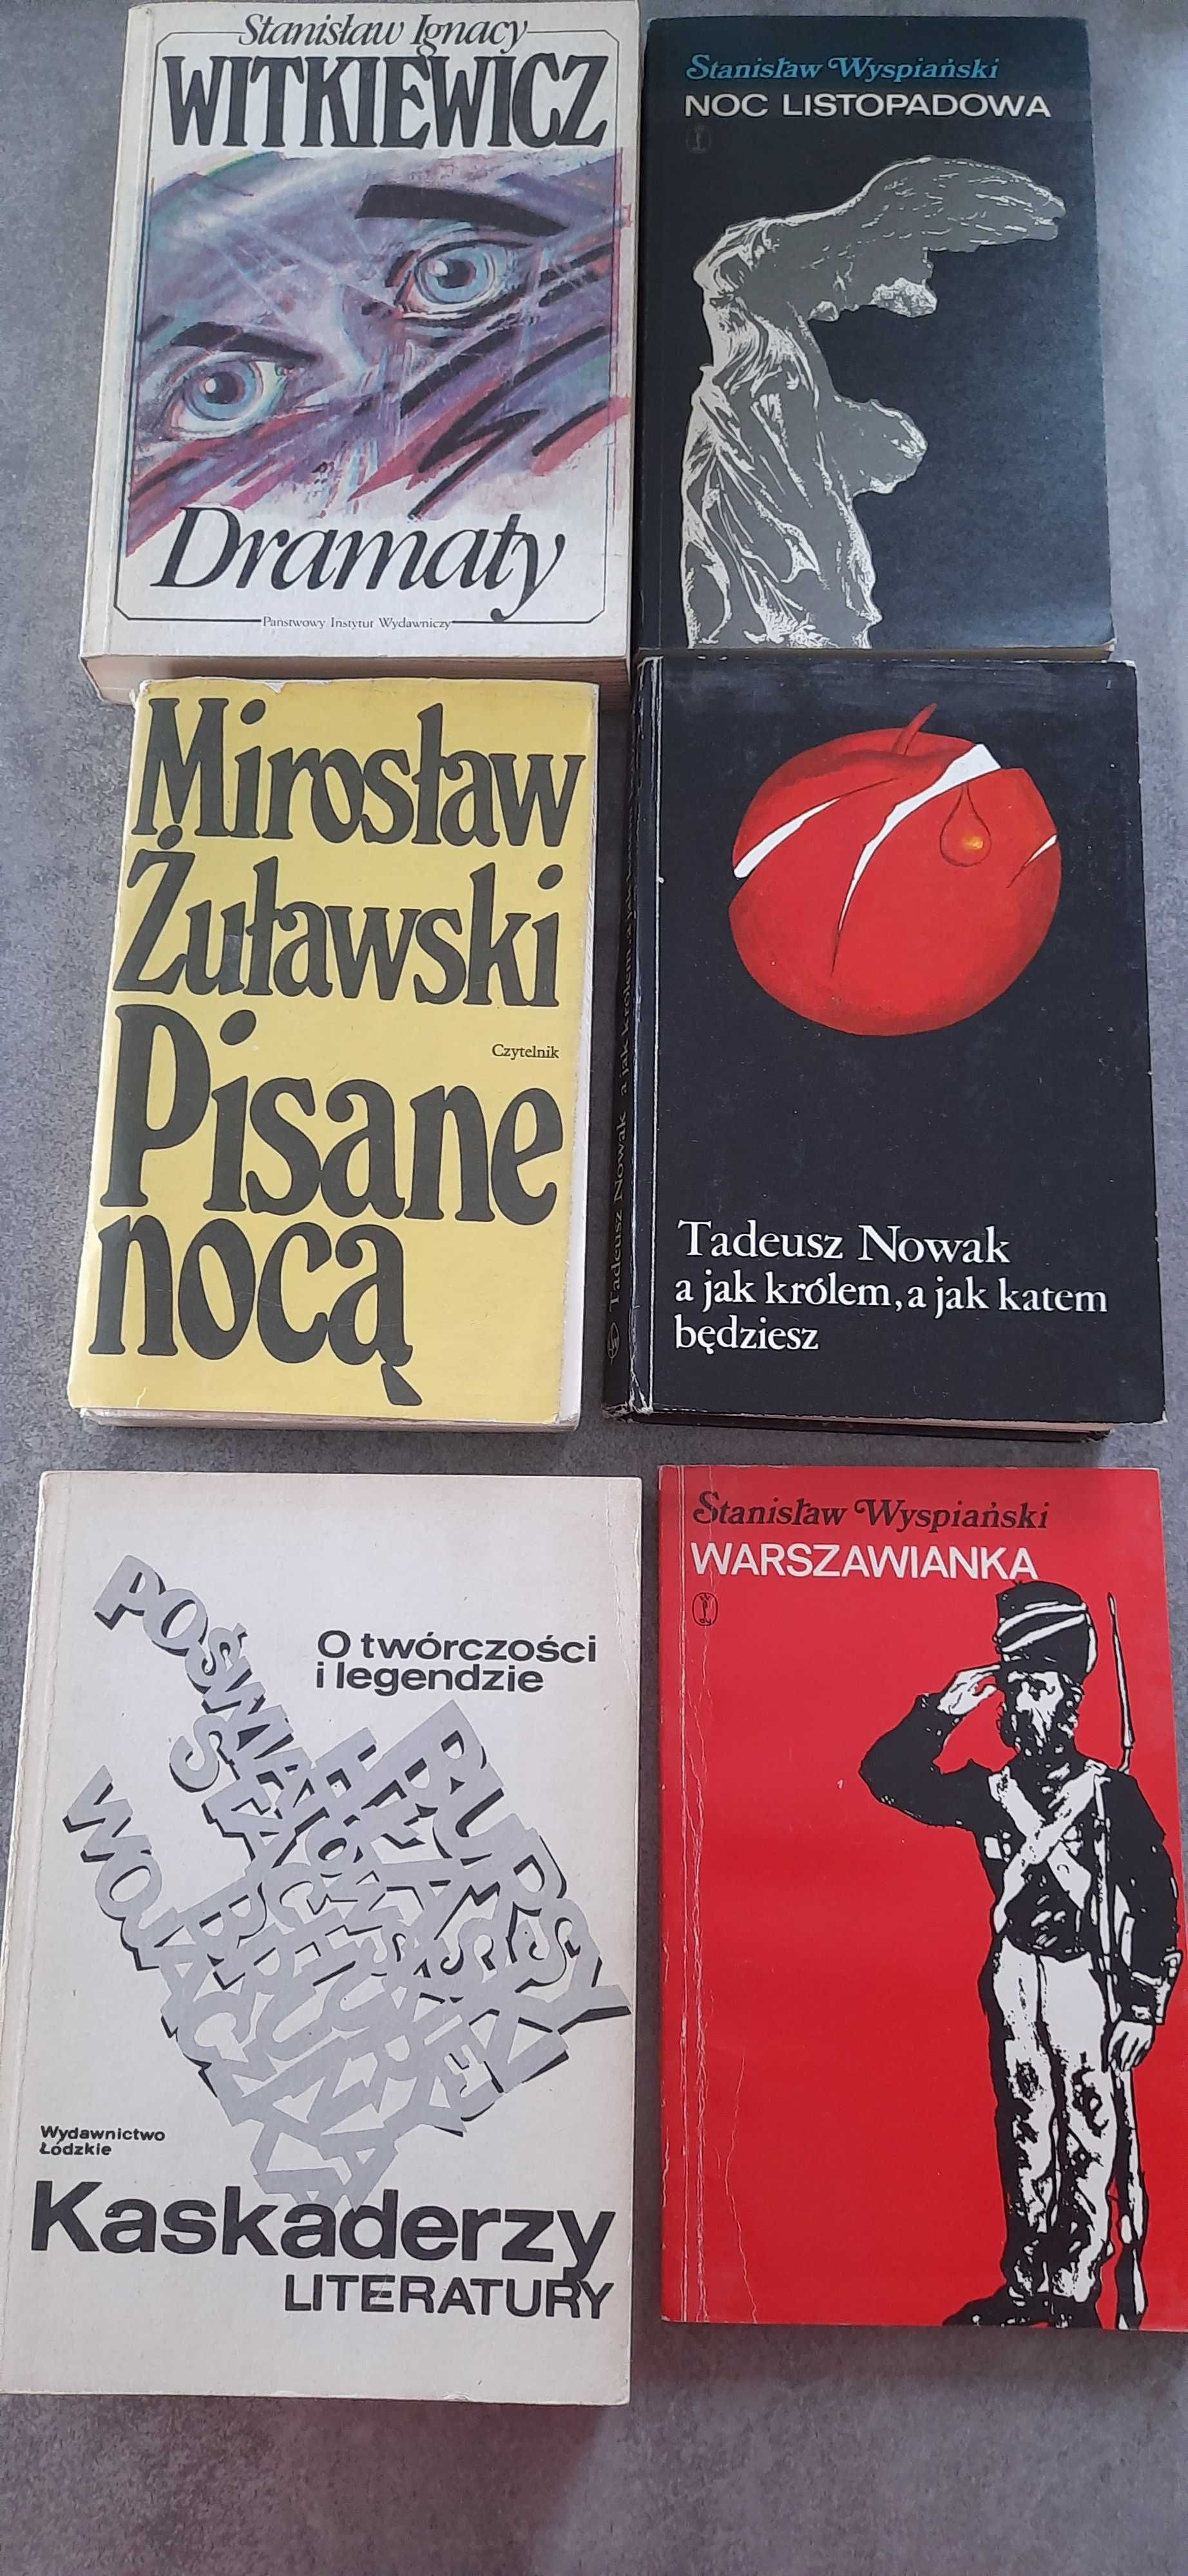 Zestaw książek Kaskaderzy literatury, Wyspiański, Witkiewicz, Nowak